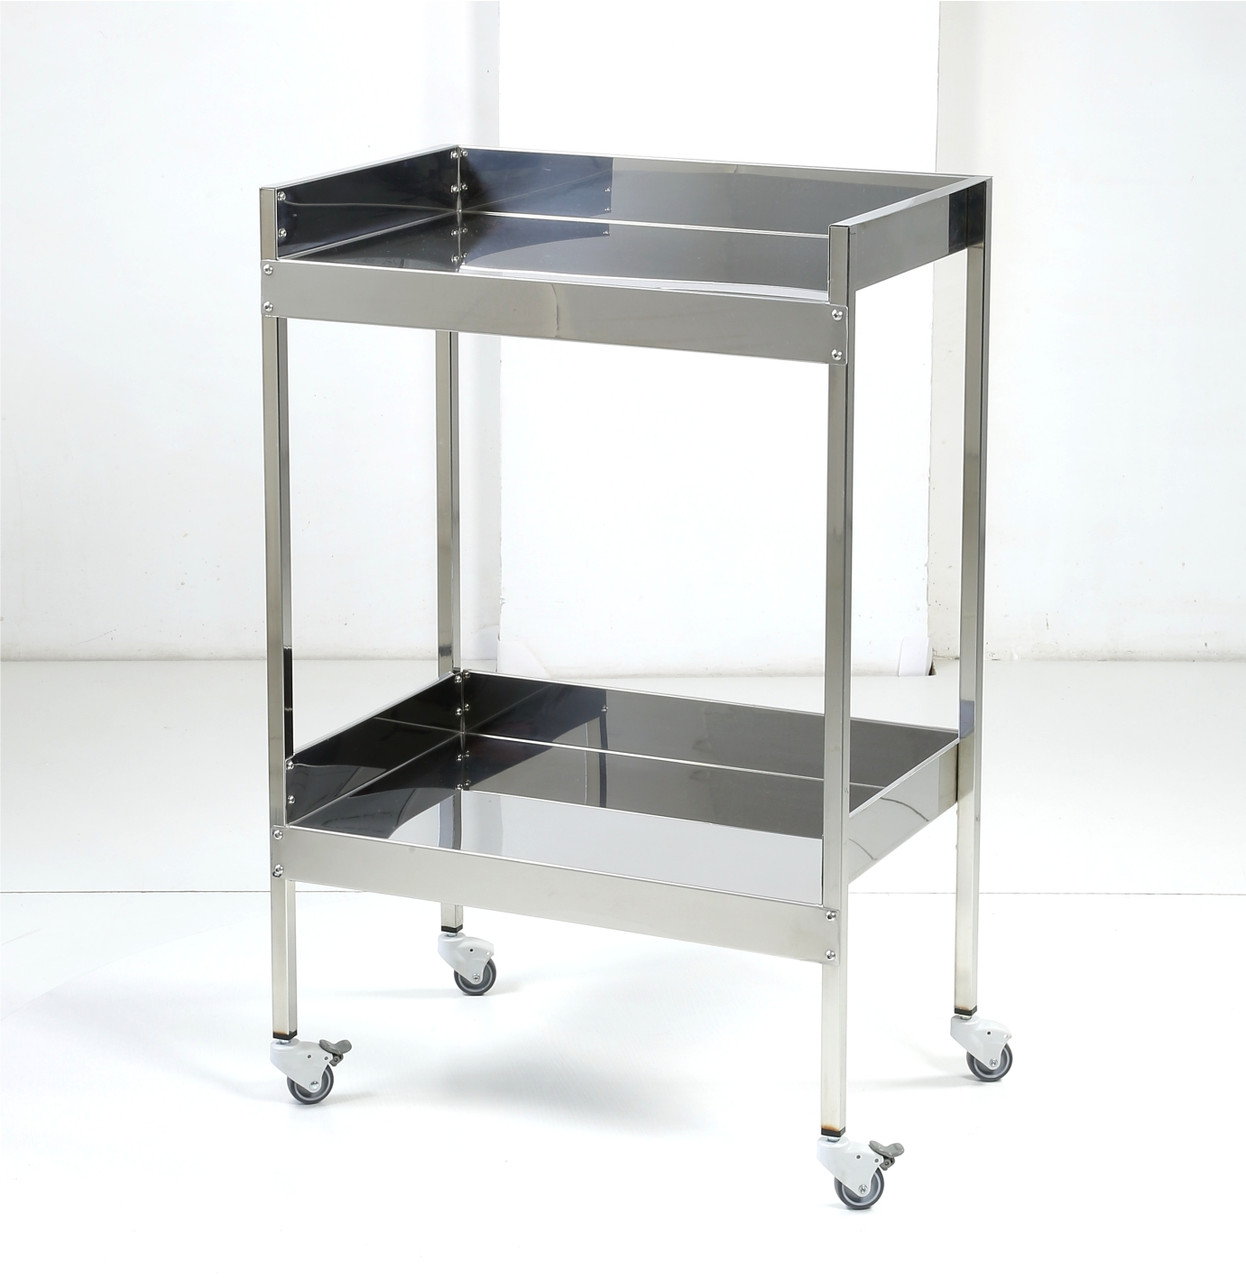 Стіл медичний-стелаж медичний на 2 полиці (600) СтС-2П-600 стіл інструментальний стіл маніпуляційний